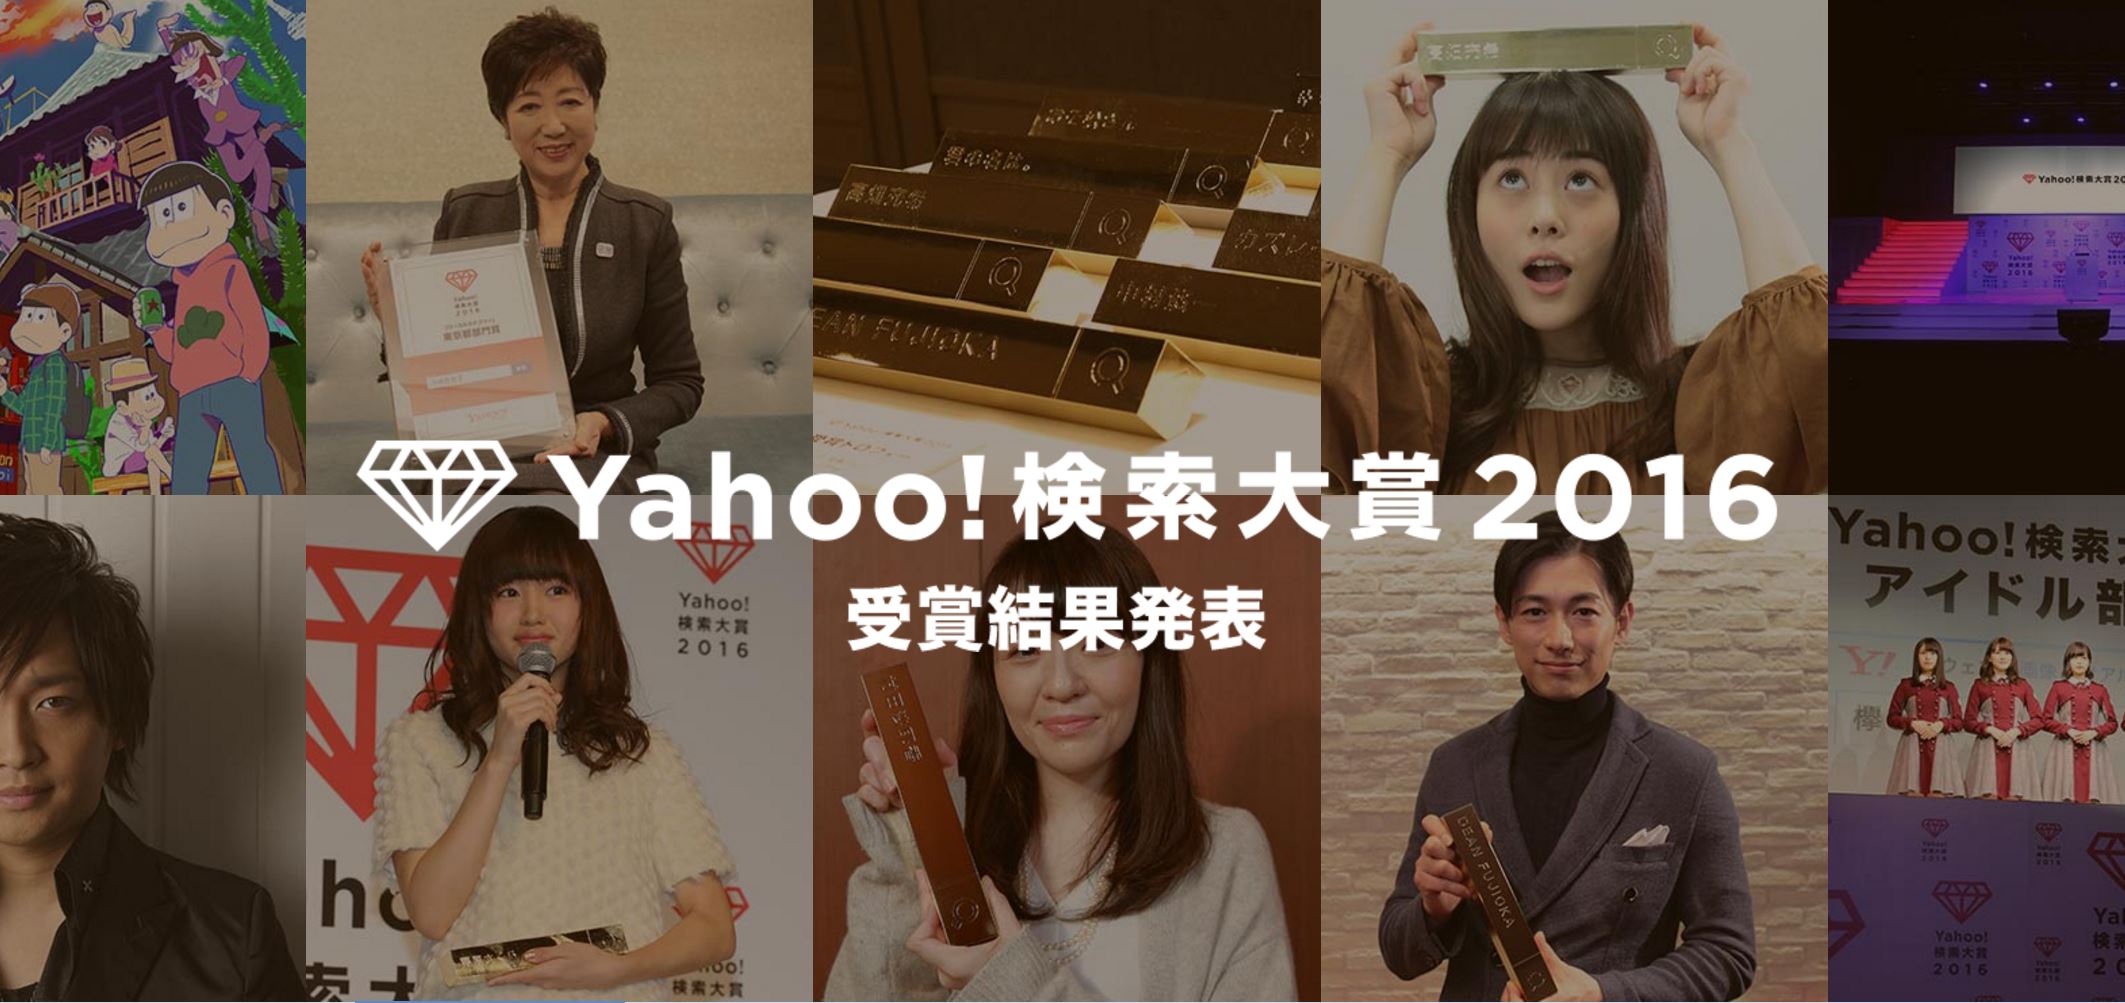 ヤフー、｢Yahoo!検索大賞2016｣の受賞結果を発表 － ゲーム部門は｢ポケモンGO｣が受賞